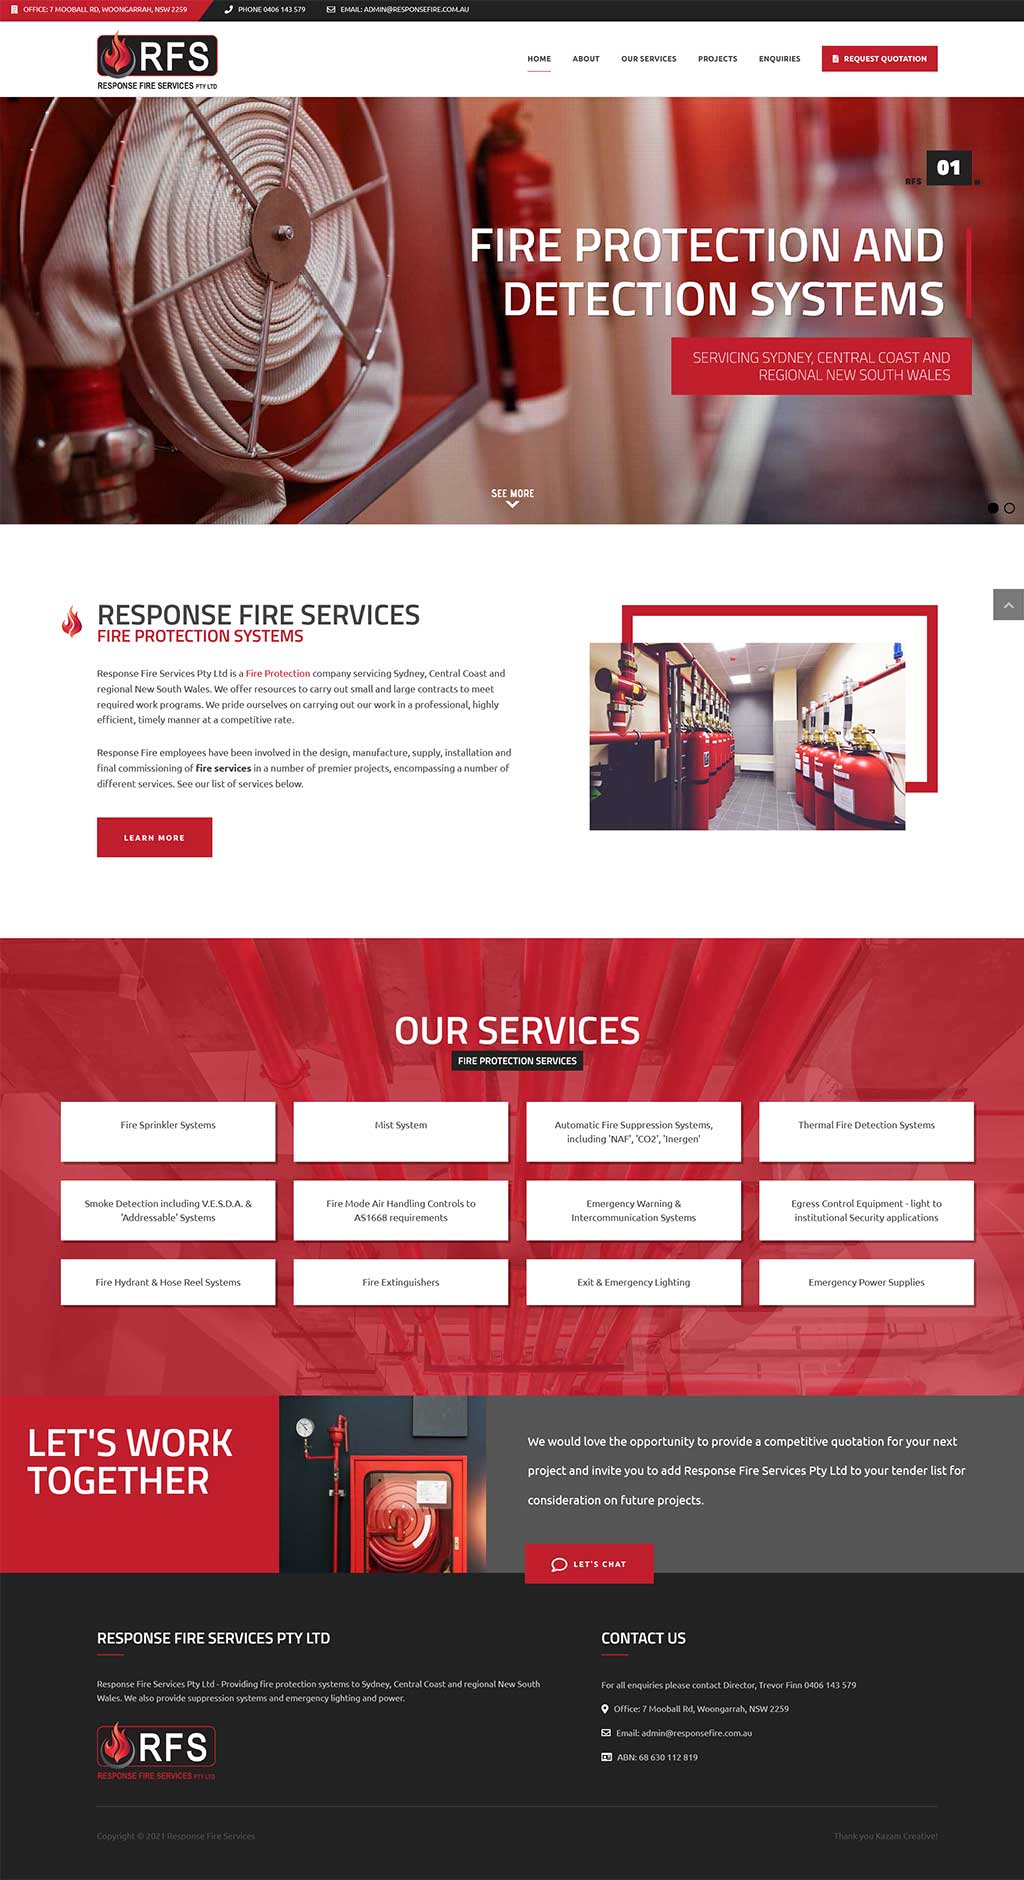 Website Design Client - Response Fire Services Pty Ltd